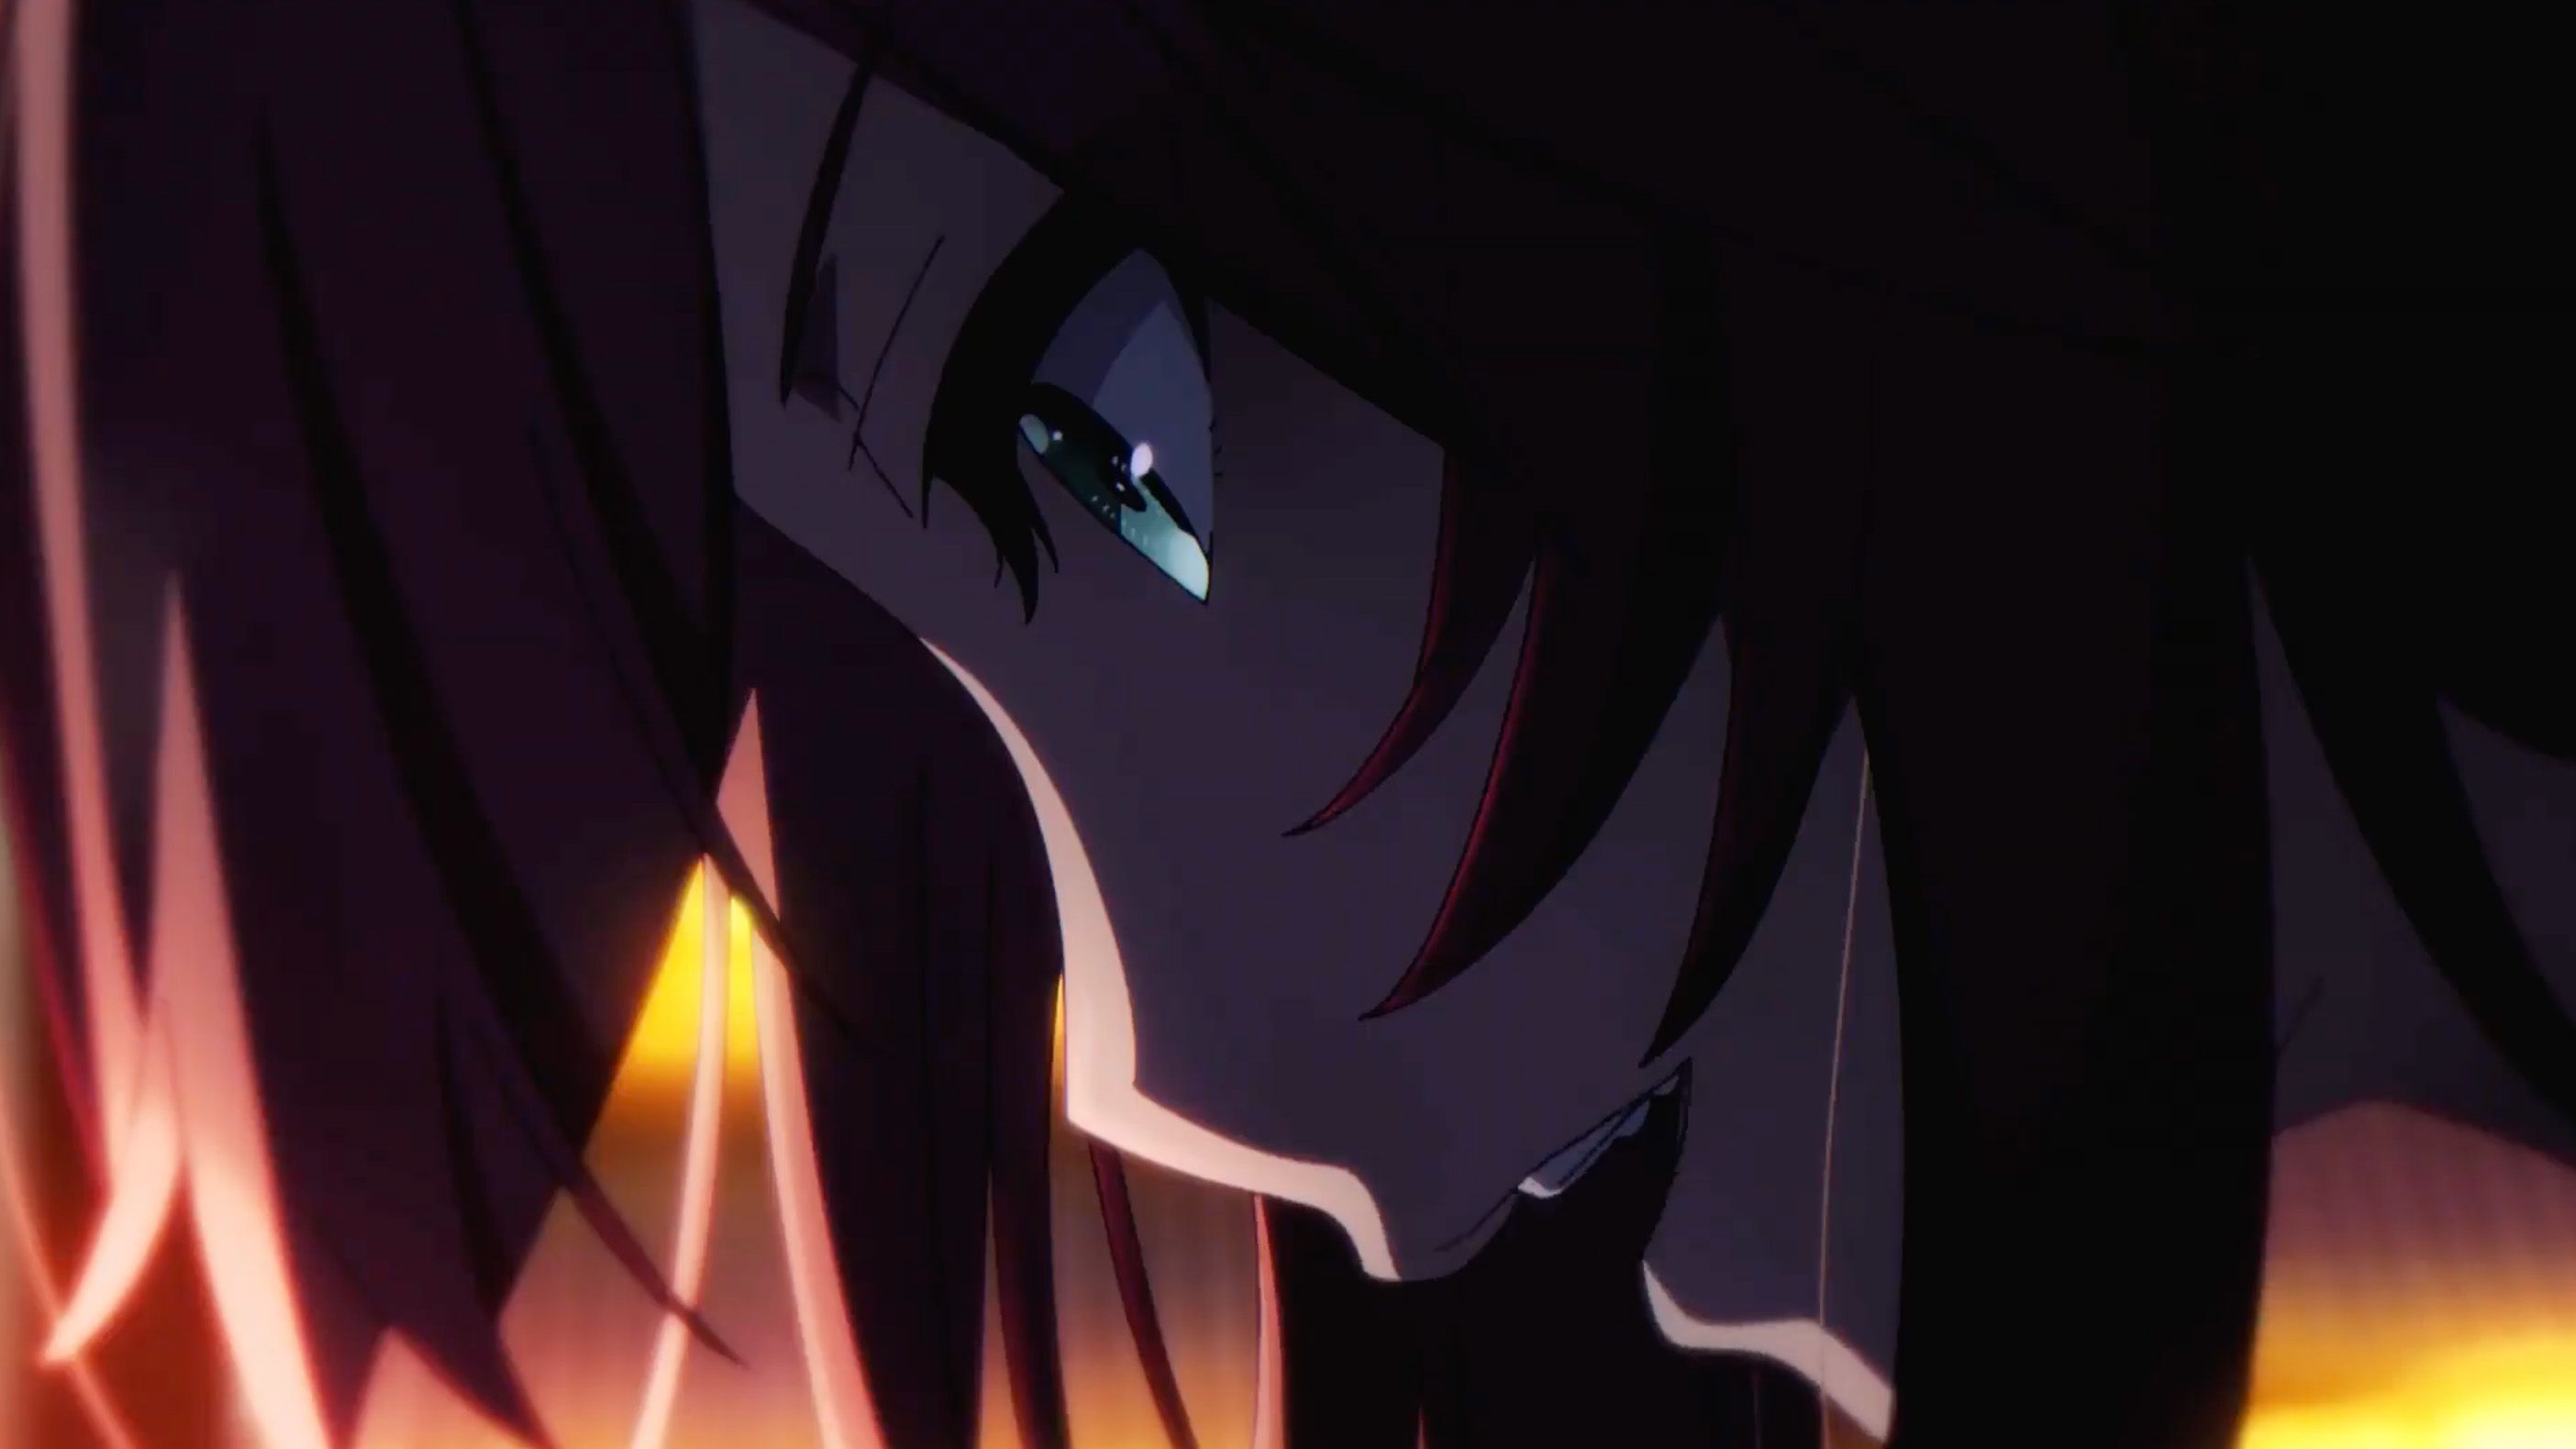 Shadow Anime (Anime Life 5) by AsumiAkira on DeviantArt-demhanvico.com.vn